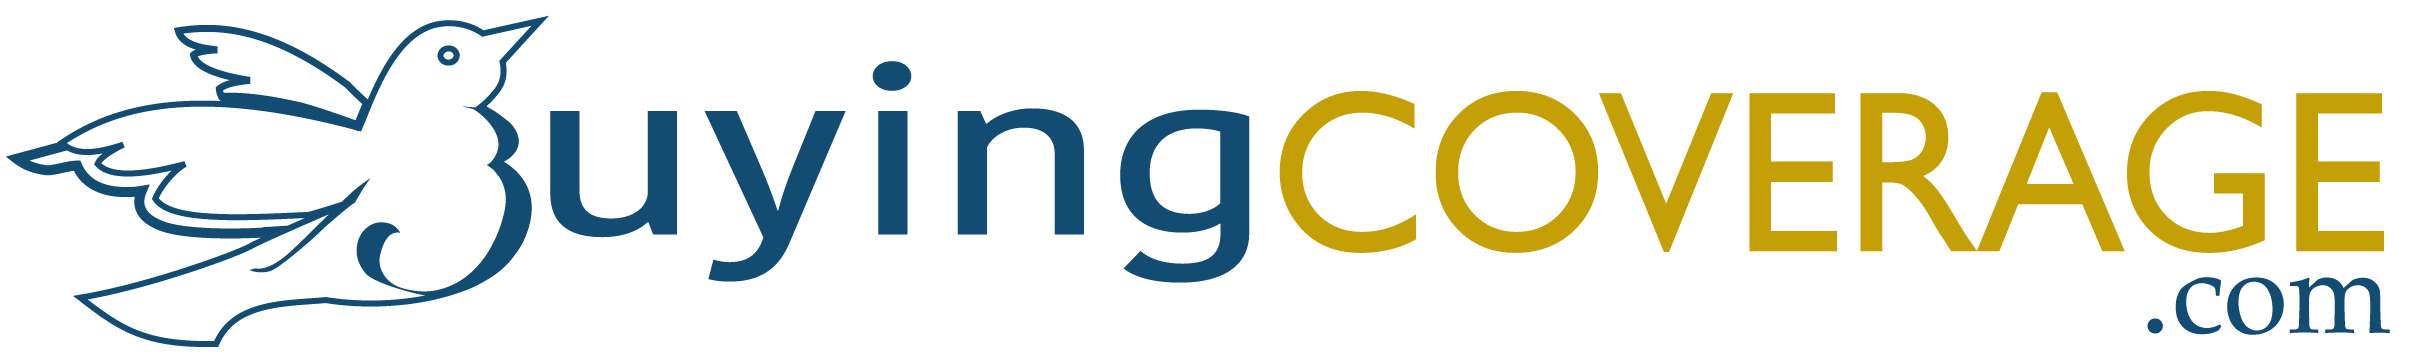 Buyingcoverage.com logo